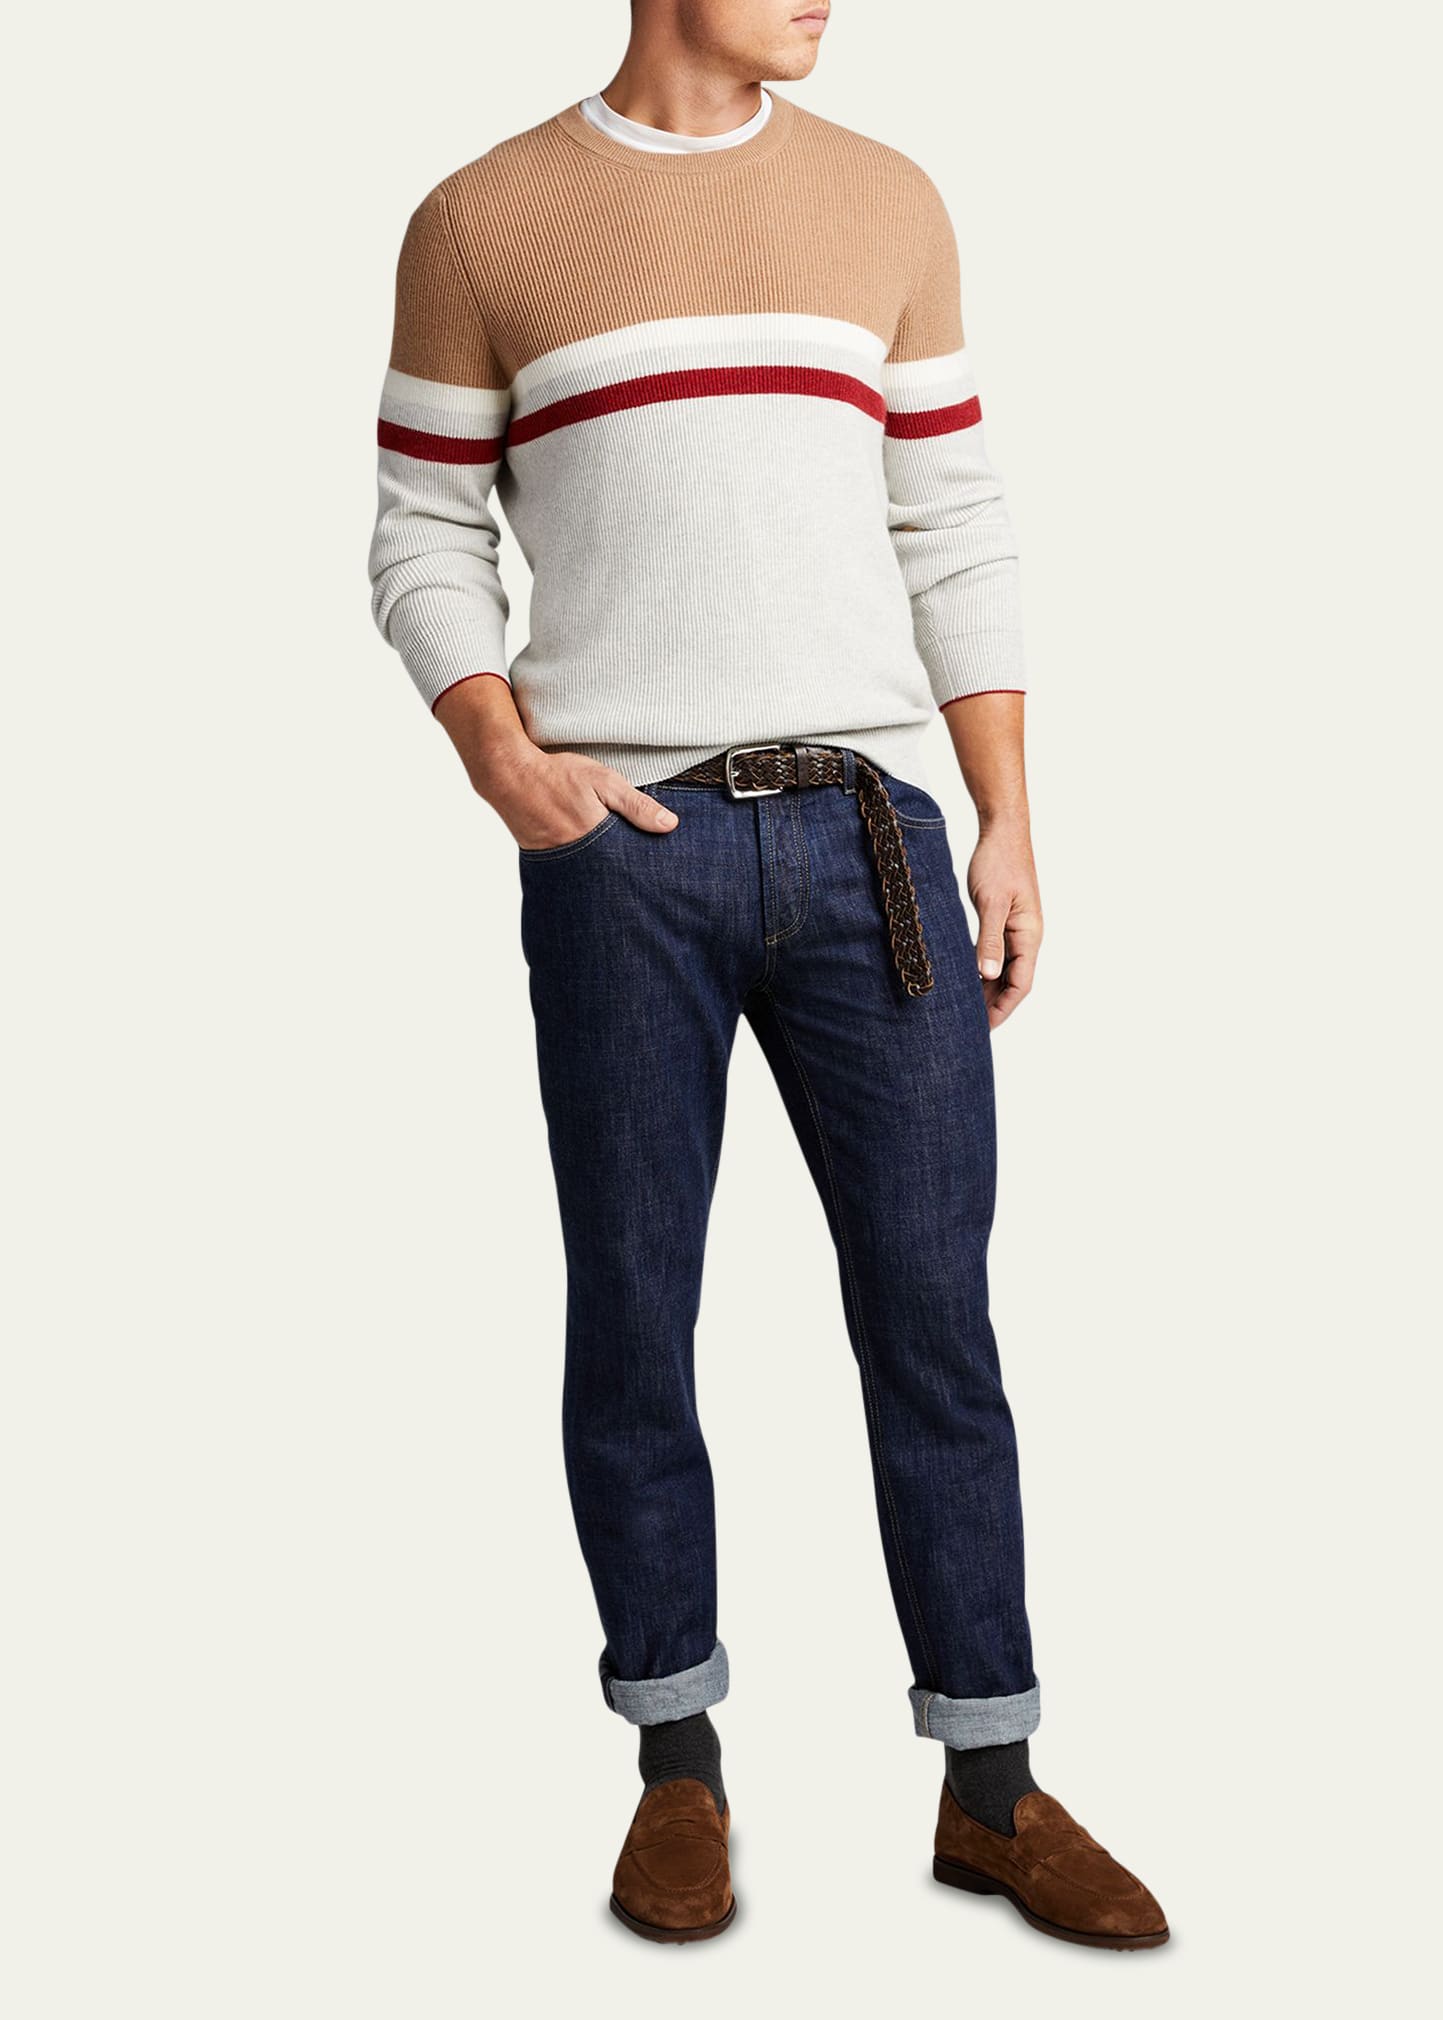 Brunello Cucinelli Men's English Ribbed Stripe Cashmere Sweater In Tan